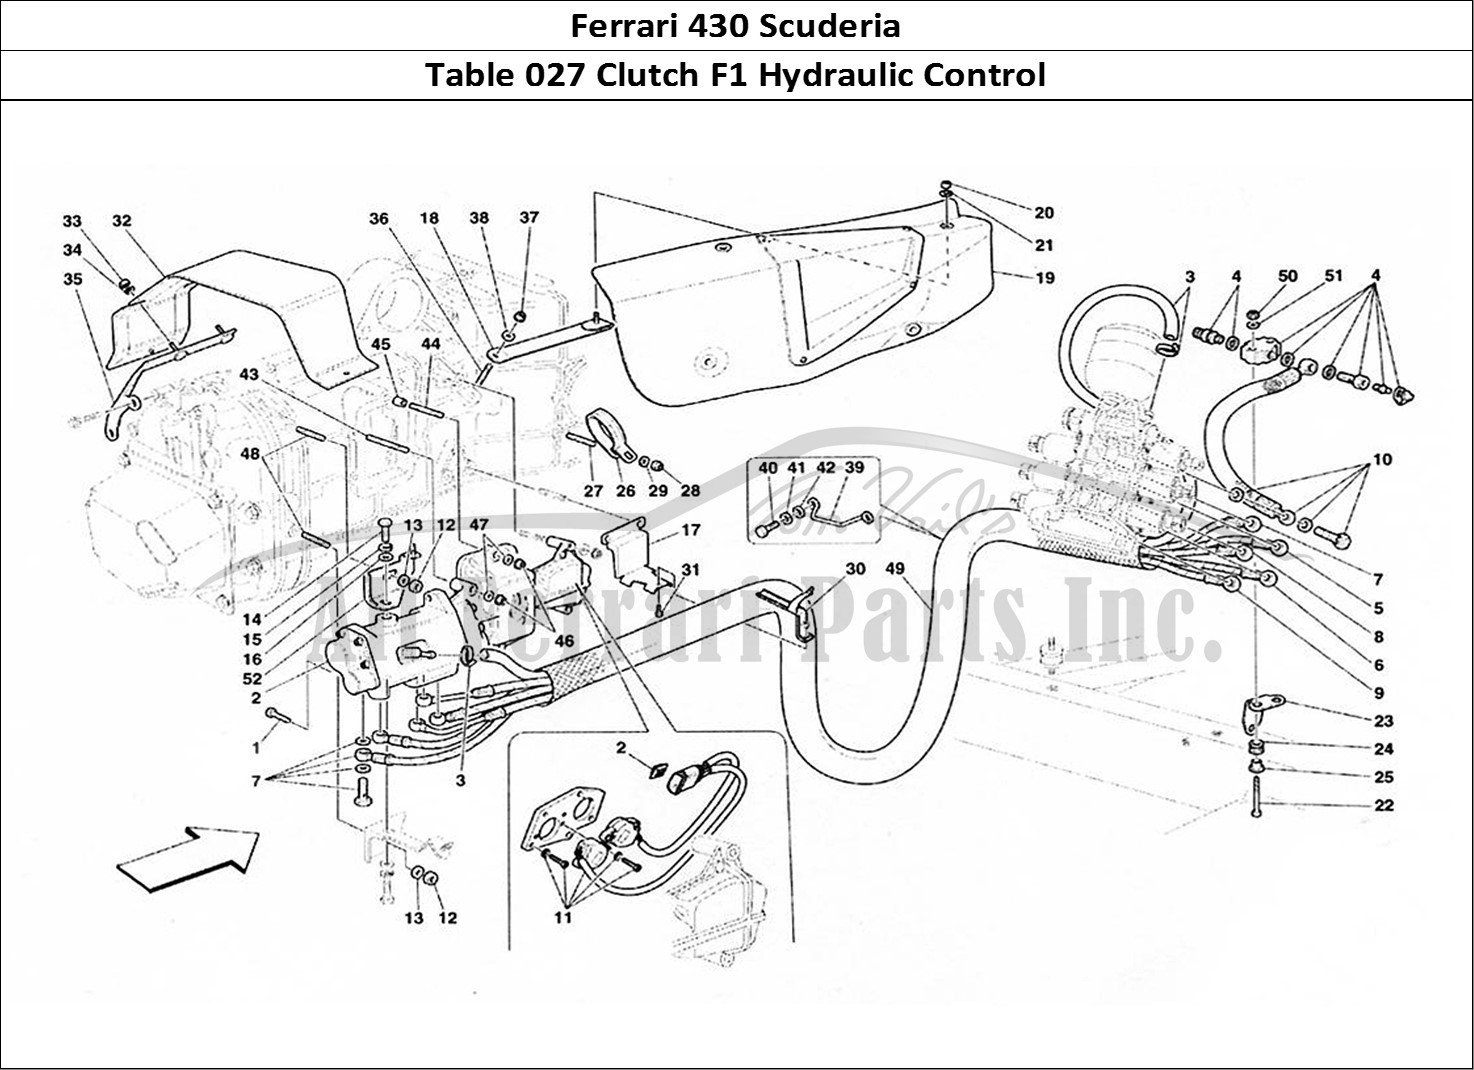 Ferrari Parts Ferrari 430 Scuderia Page 027 F1 Clutch Hydraulic Contr